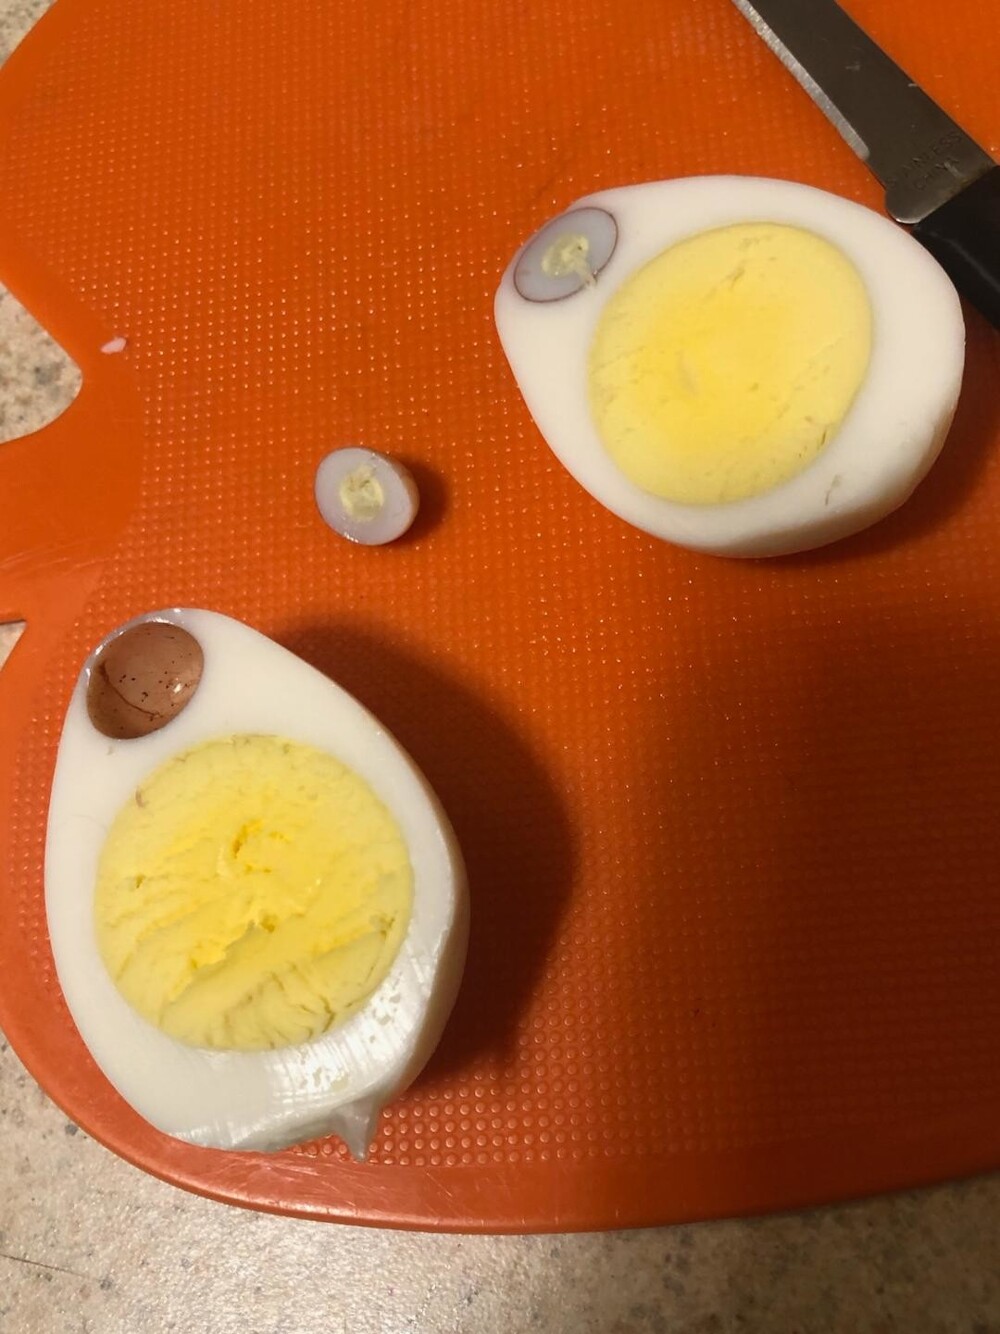 1. Моя сестра нашла это крошечное яйцо внутри яйца вкрутую